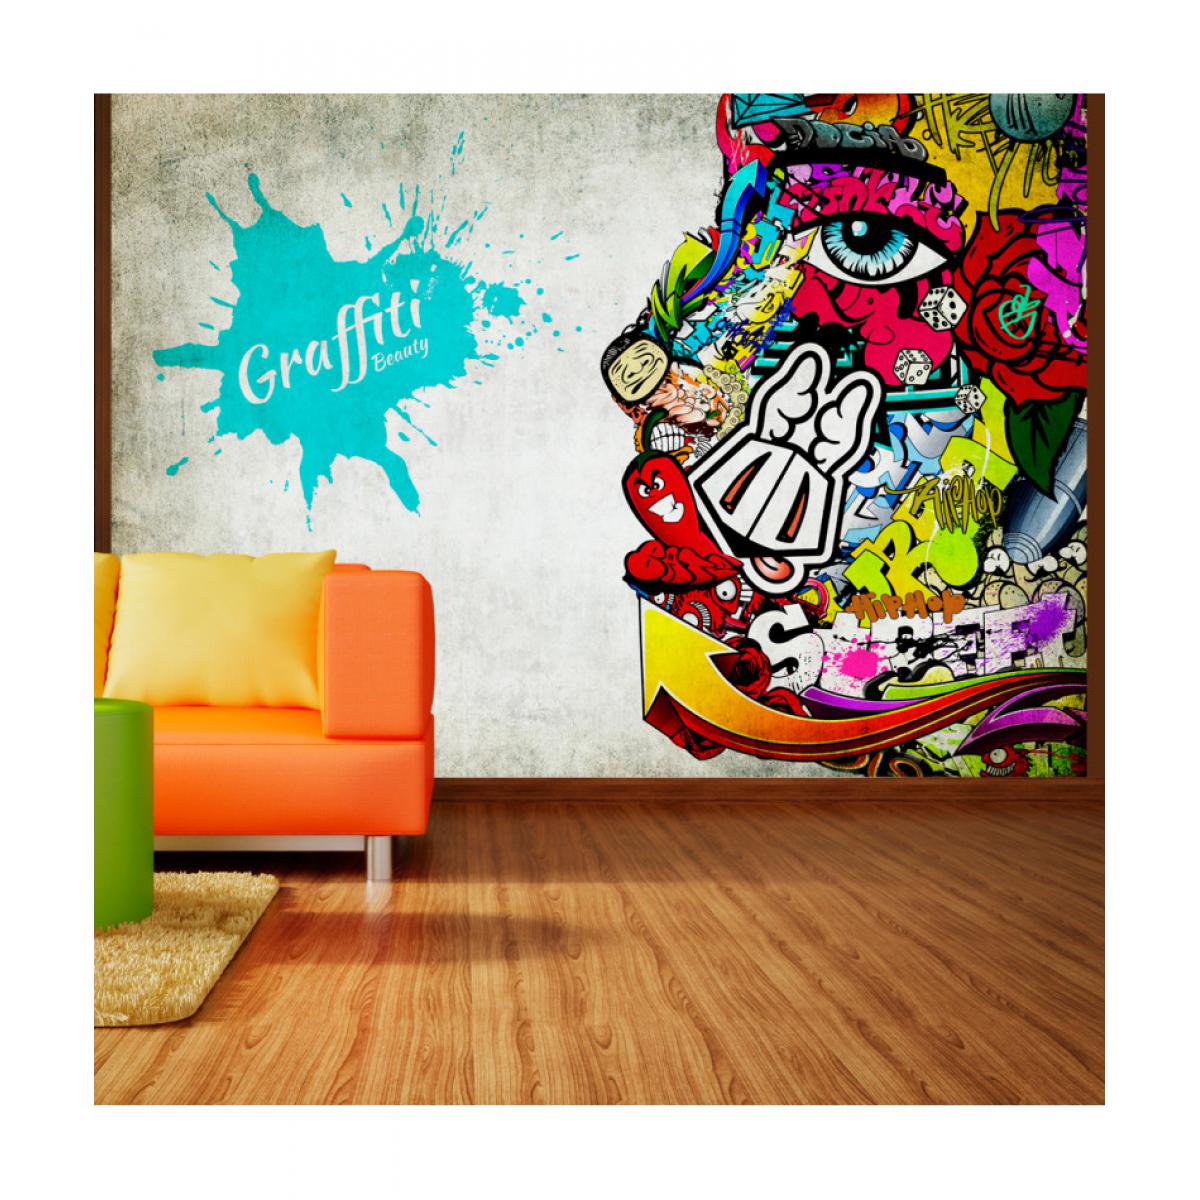 Artgeist - Papier peint - Graffiti beauty 200x140 - Papier peint